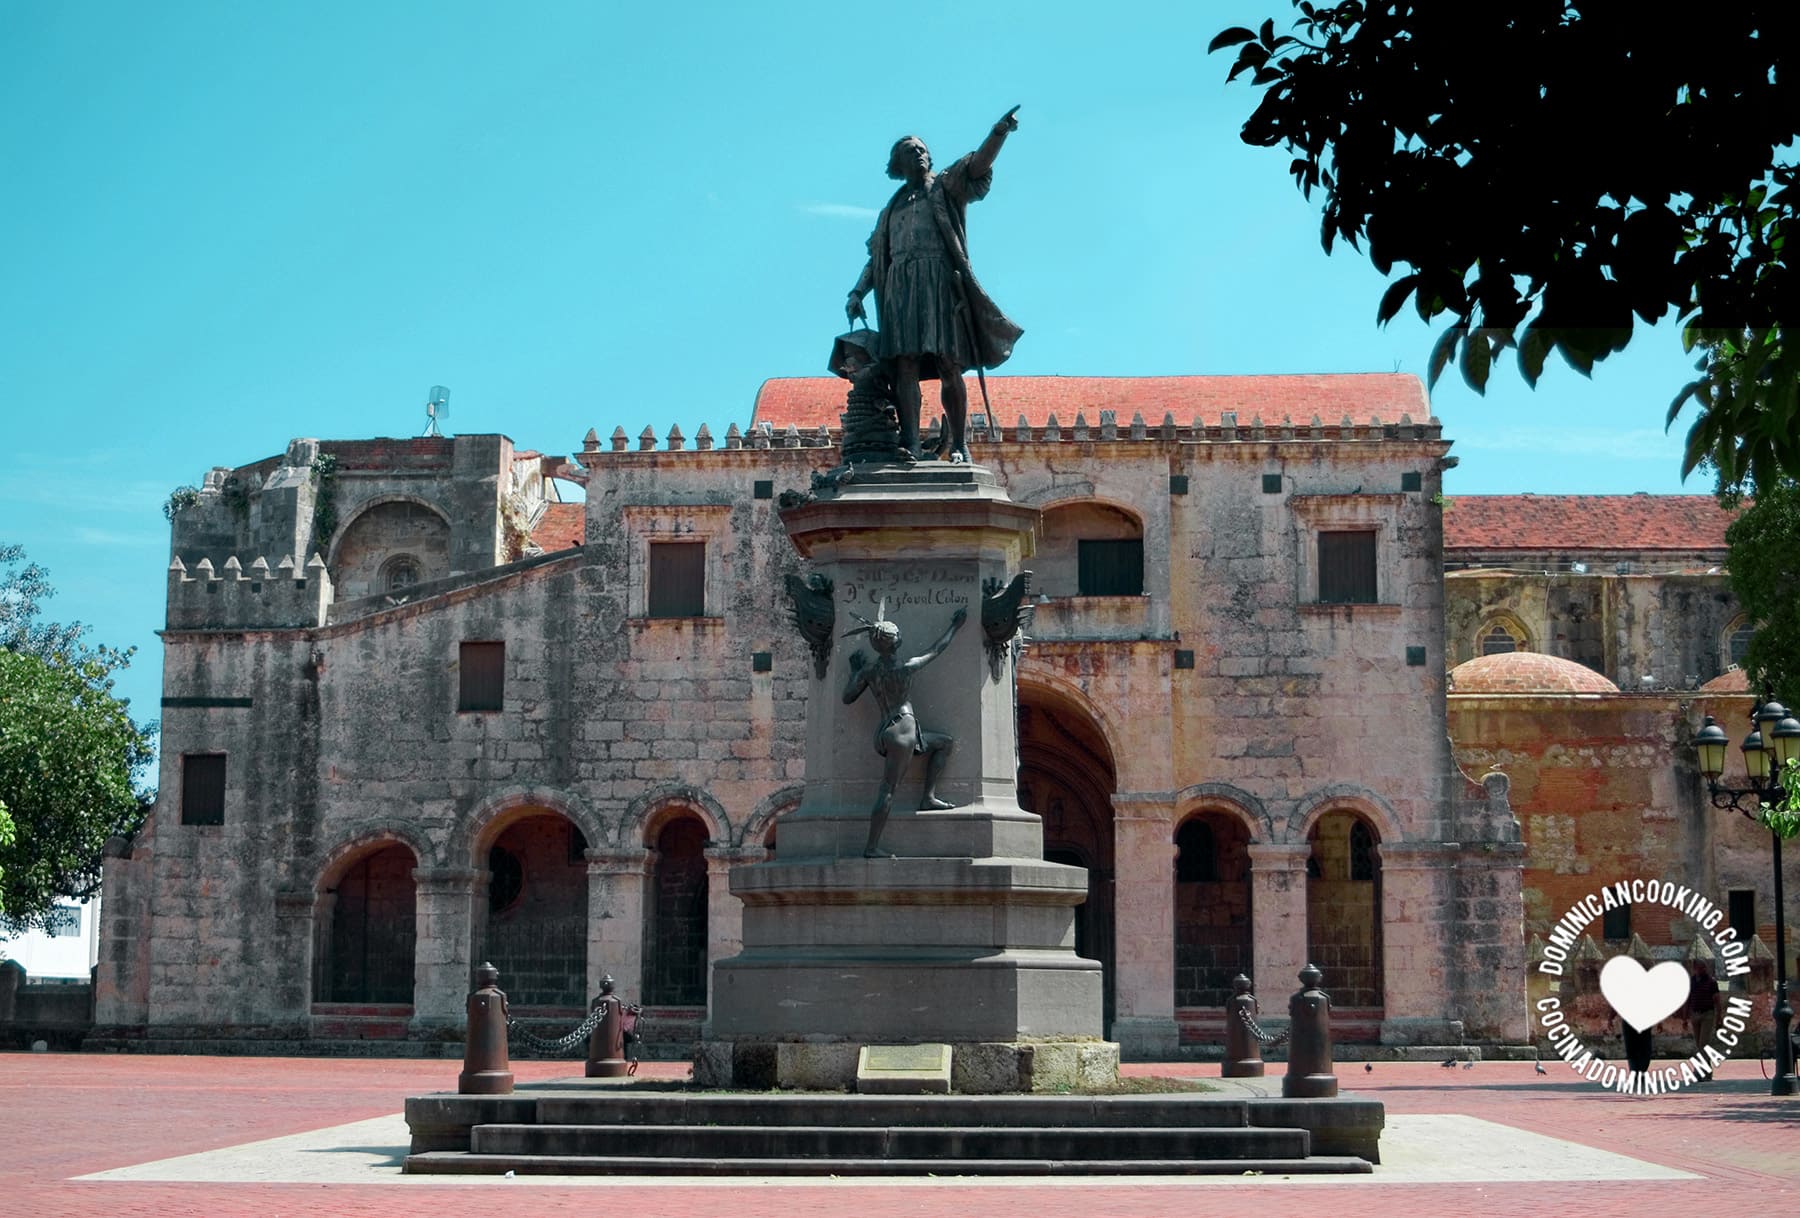 La catedral de Santo Domingo detrás del monumento a Colón.